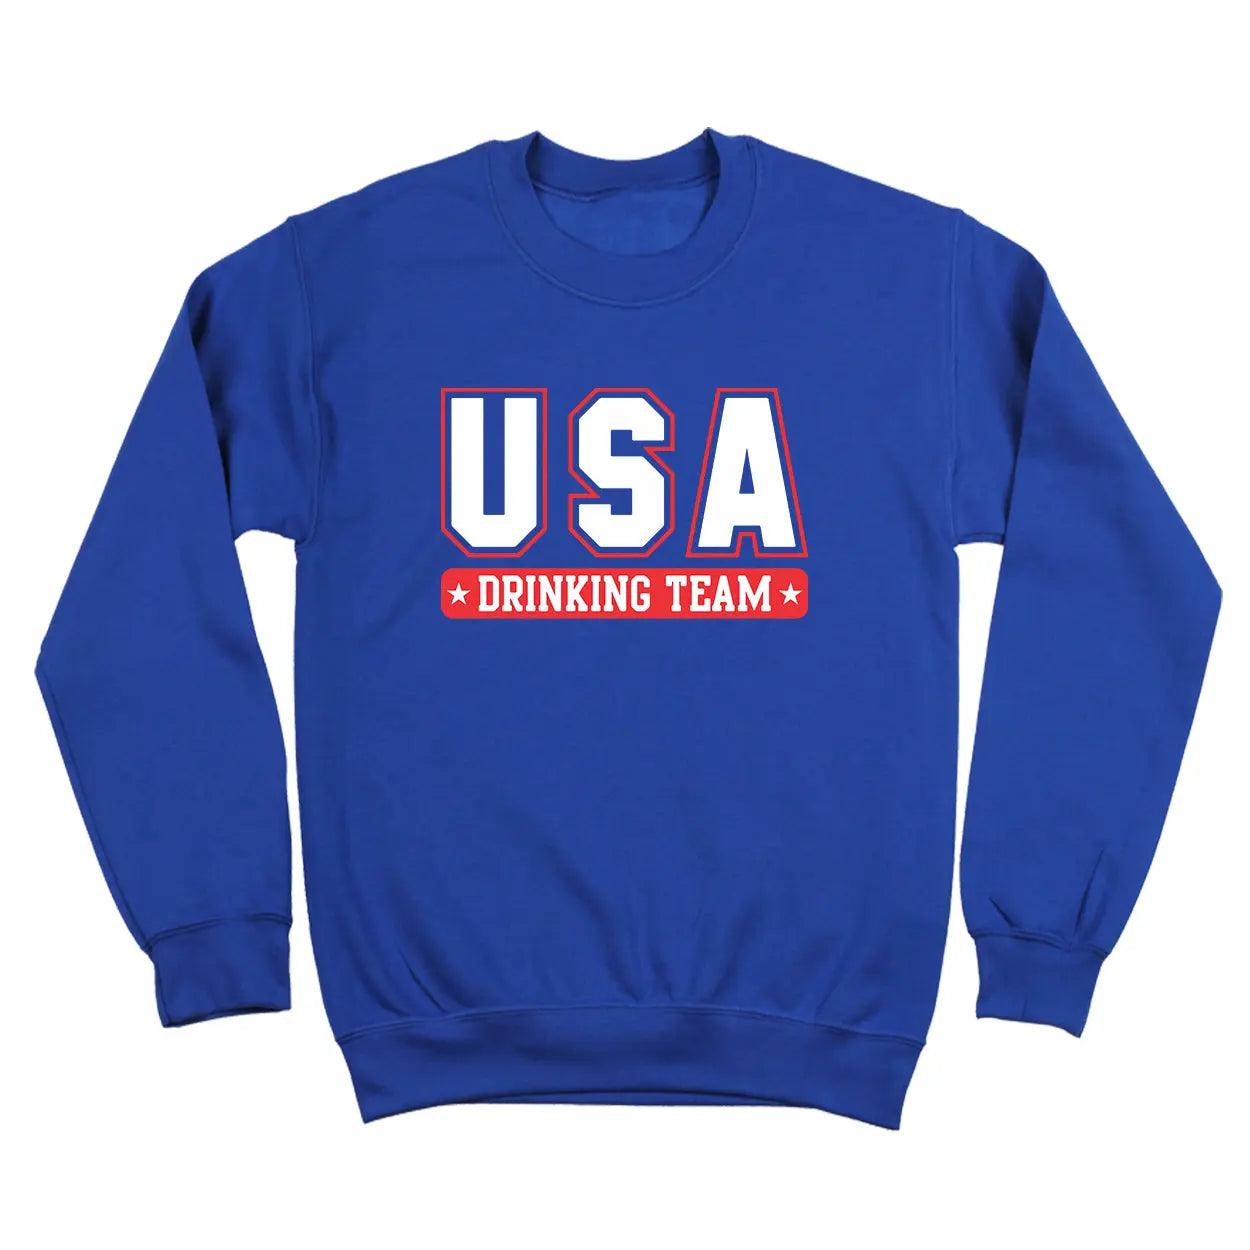 USA Drinking Team Tshirt - Donkey Tees